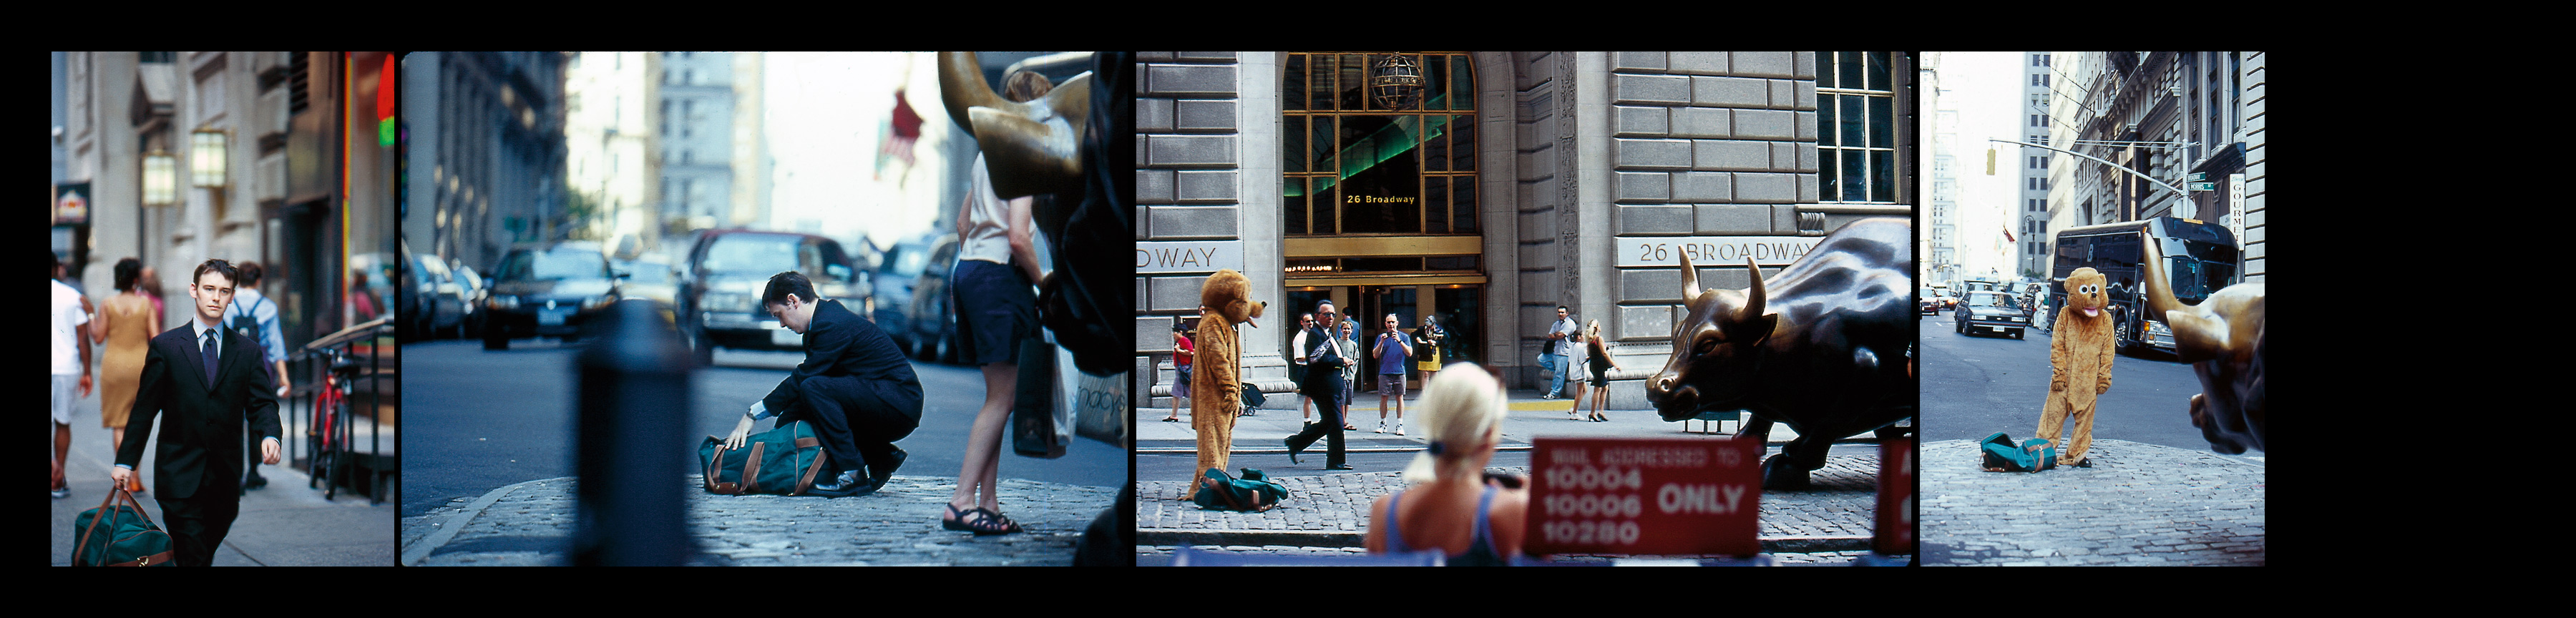 Diogenes (36 x 35mm slide transparencies), 1999/2011